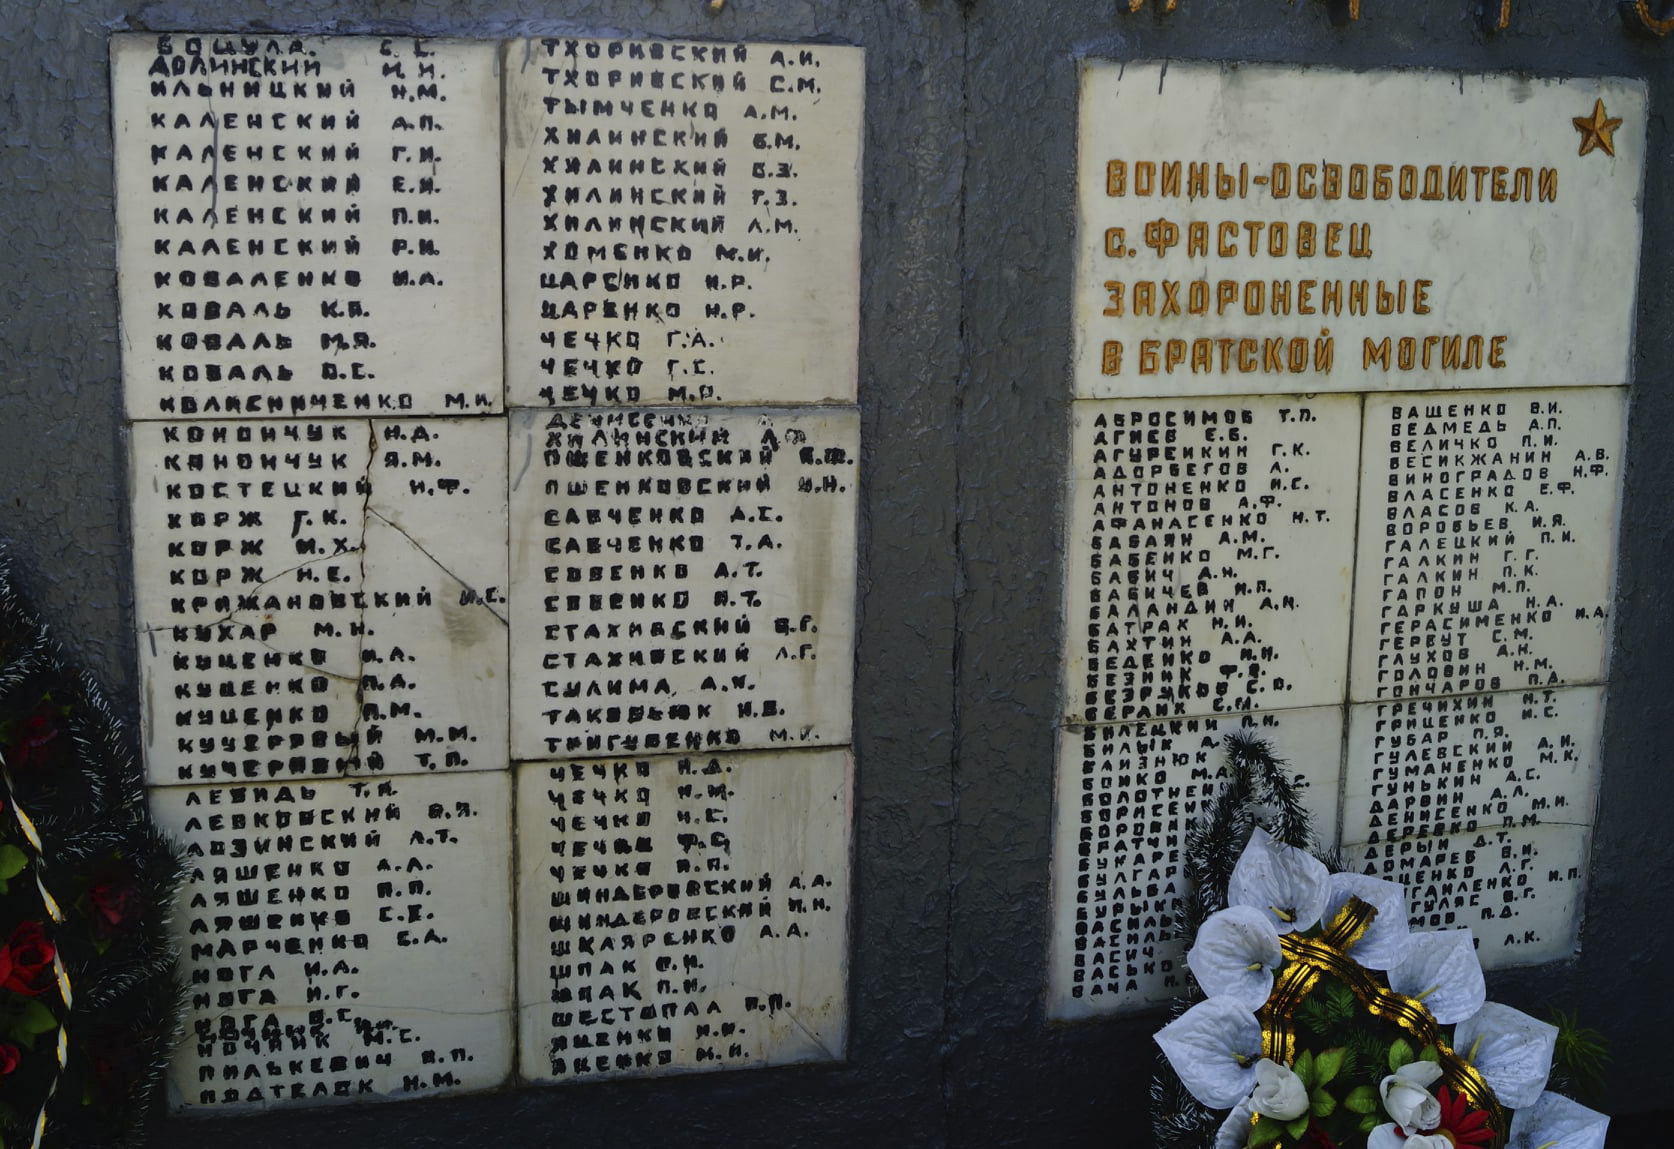 Братская могила в с. Фастовец Фастовского района